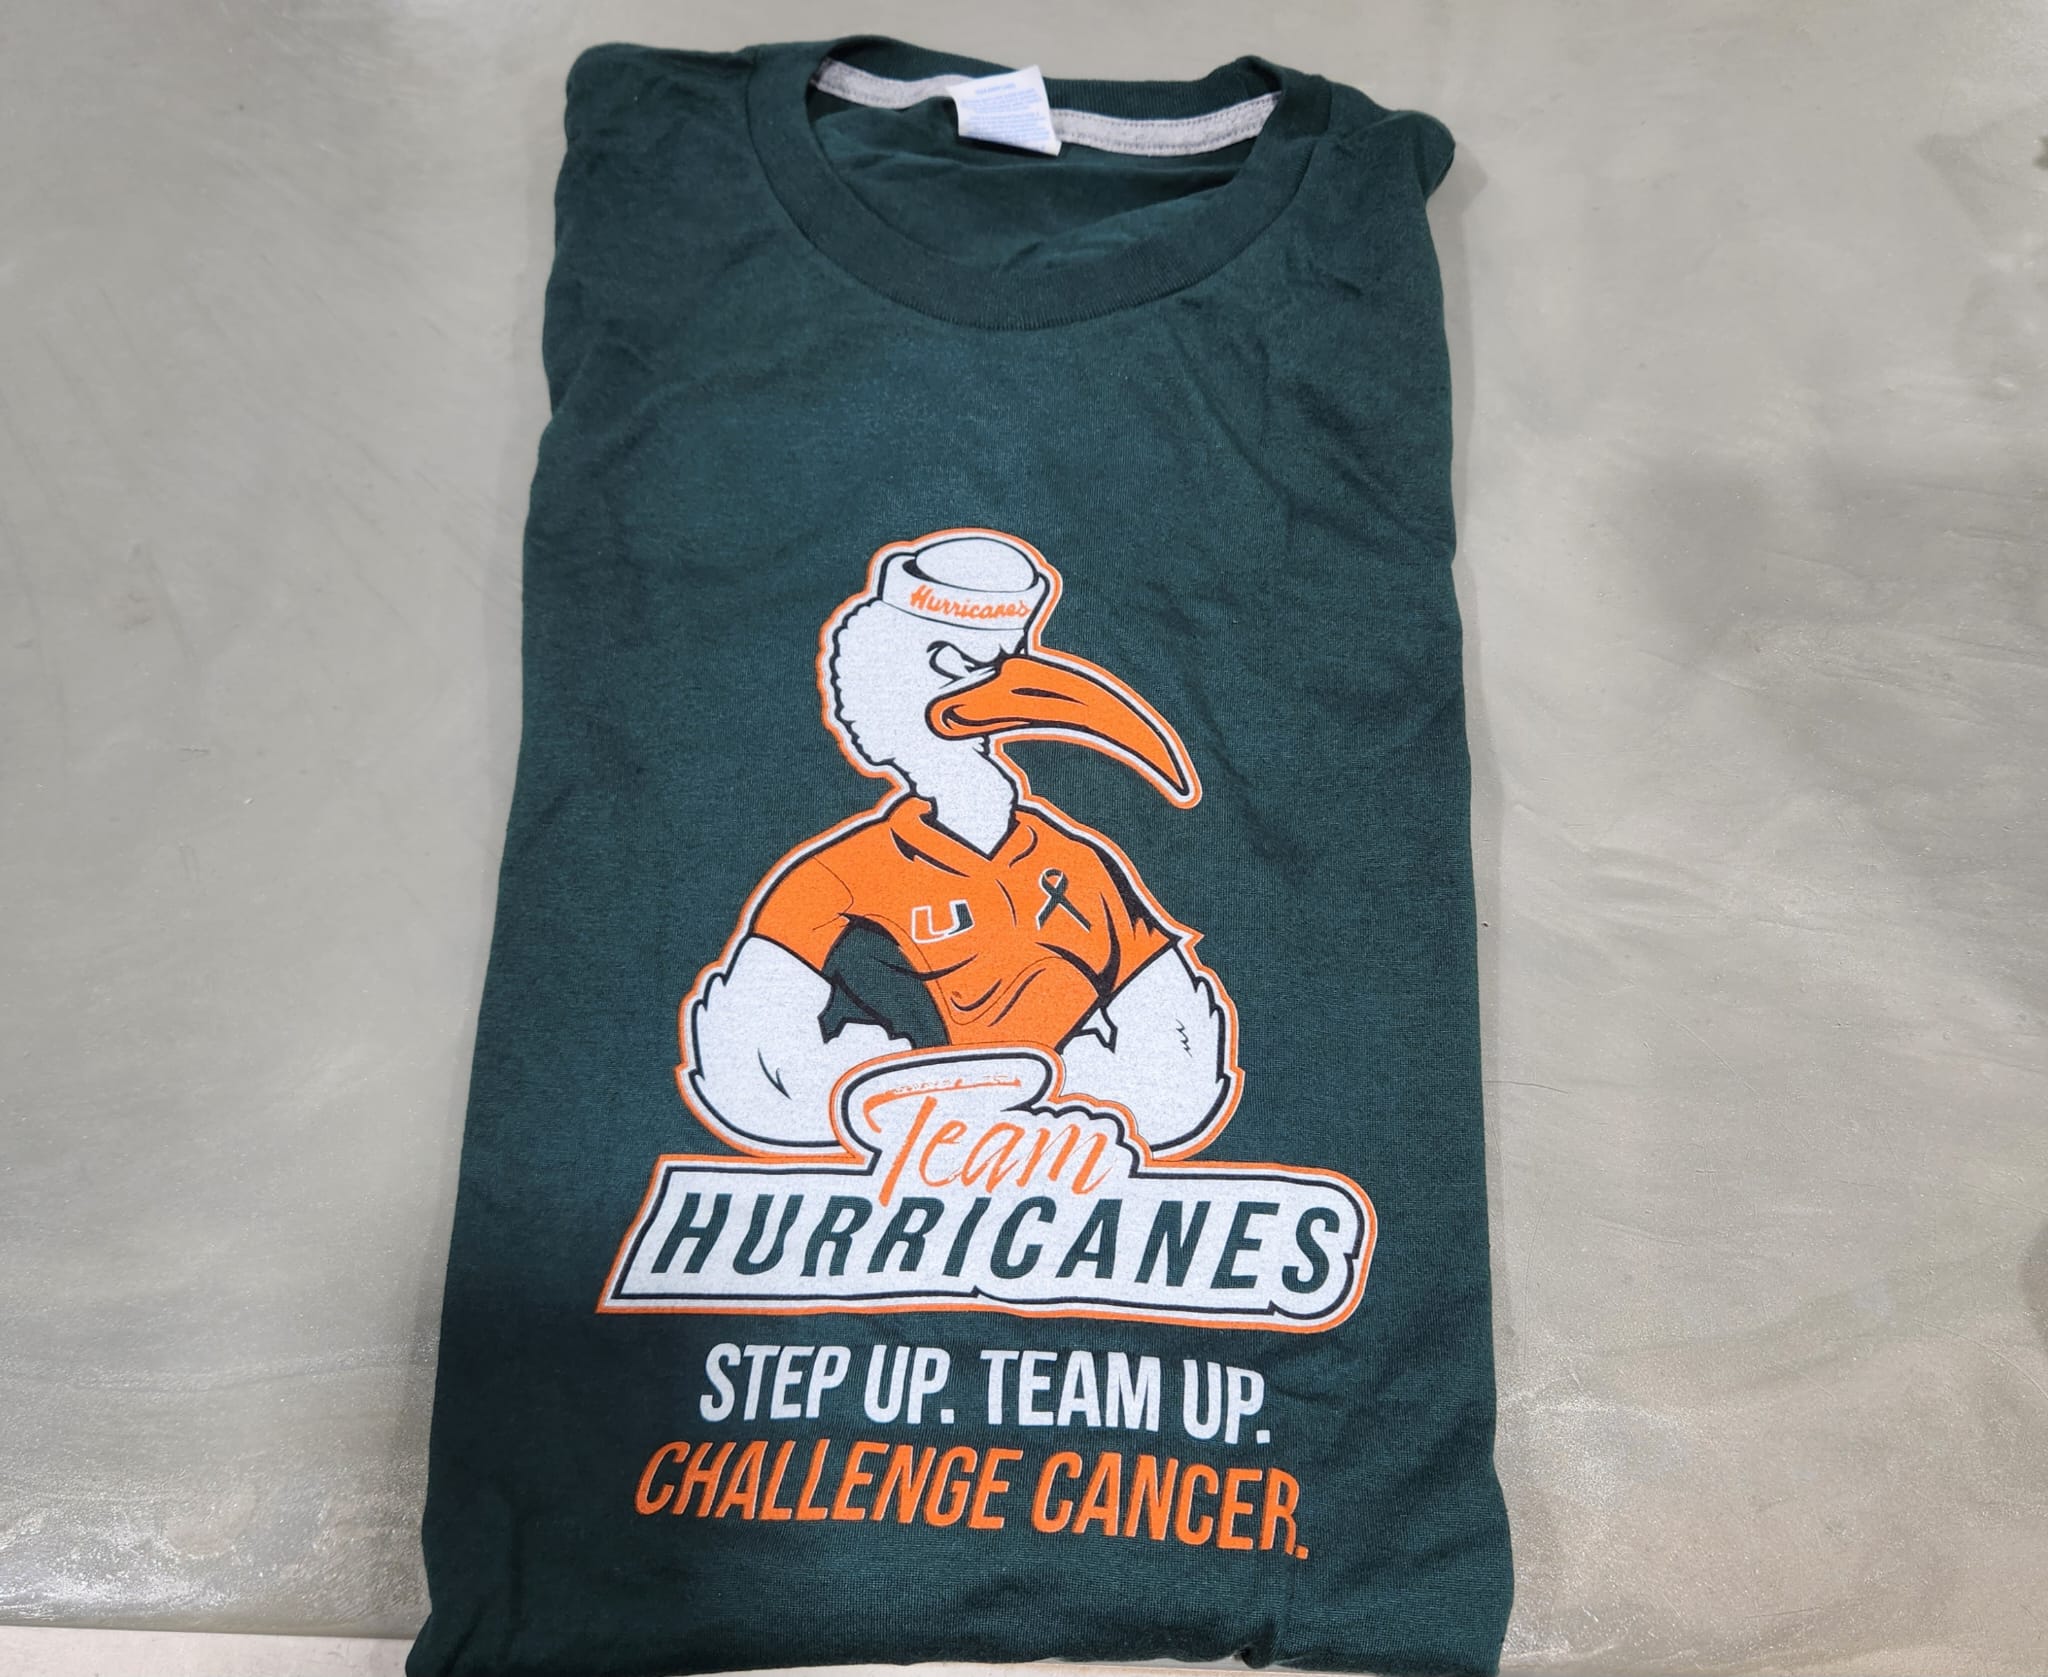 Team Hurricanes DCC 2022 Green T-Shirt - Men